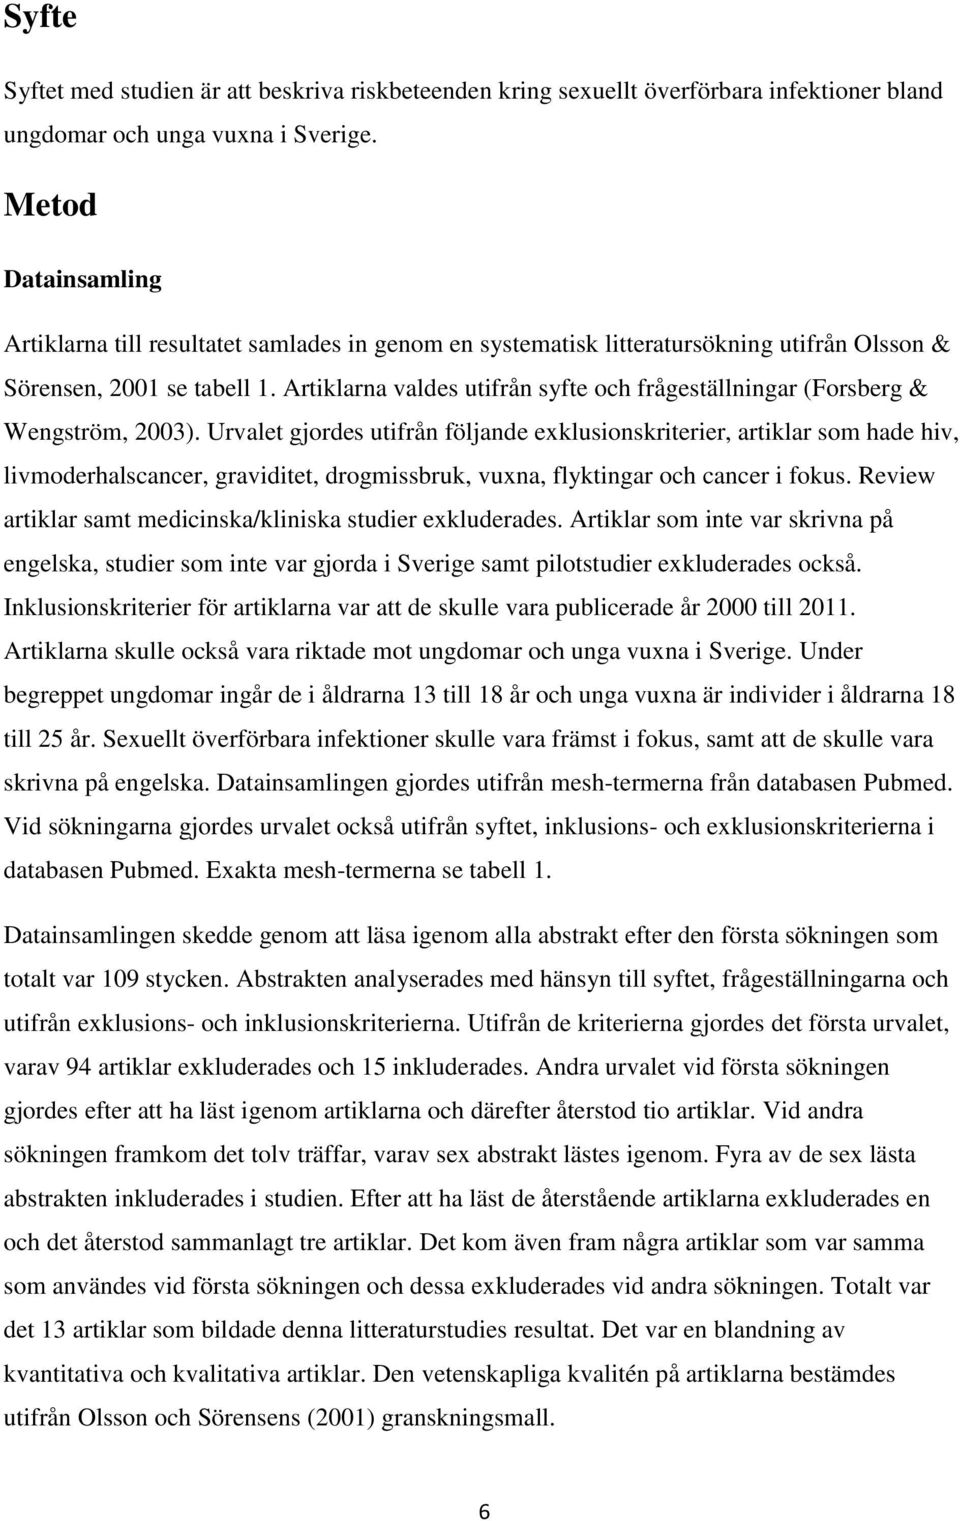 Artiklarna valdes utifrån syfte och frågeställningar (Forsberg & Wengström, 2003).